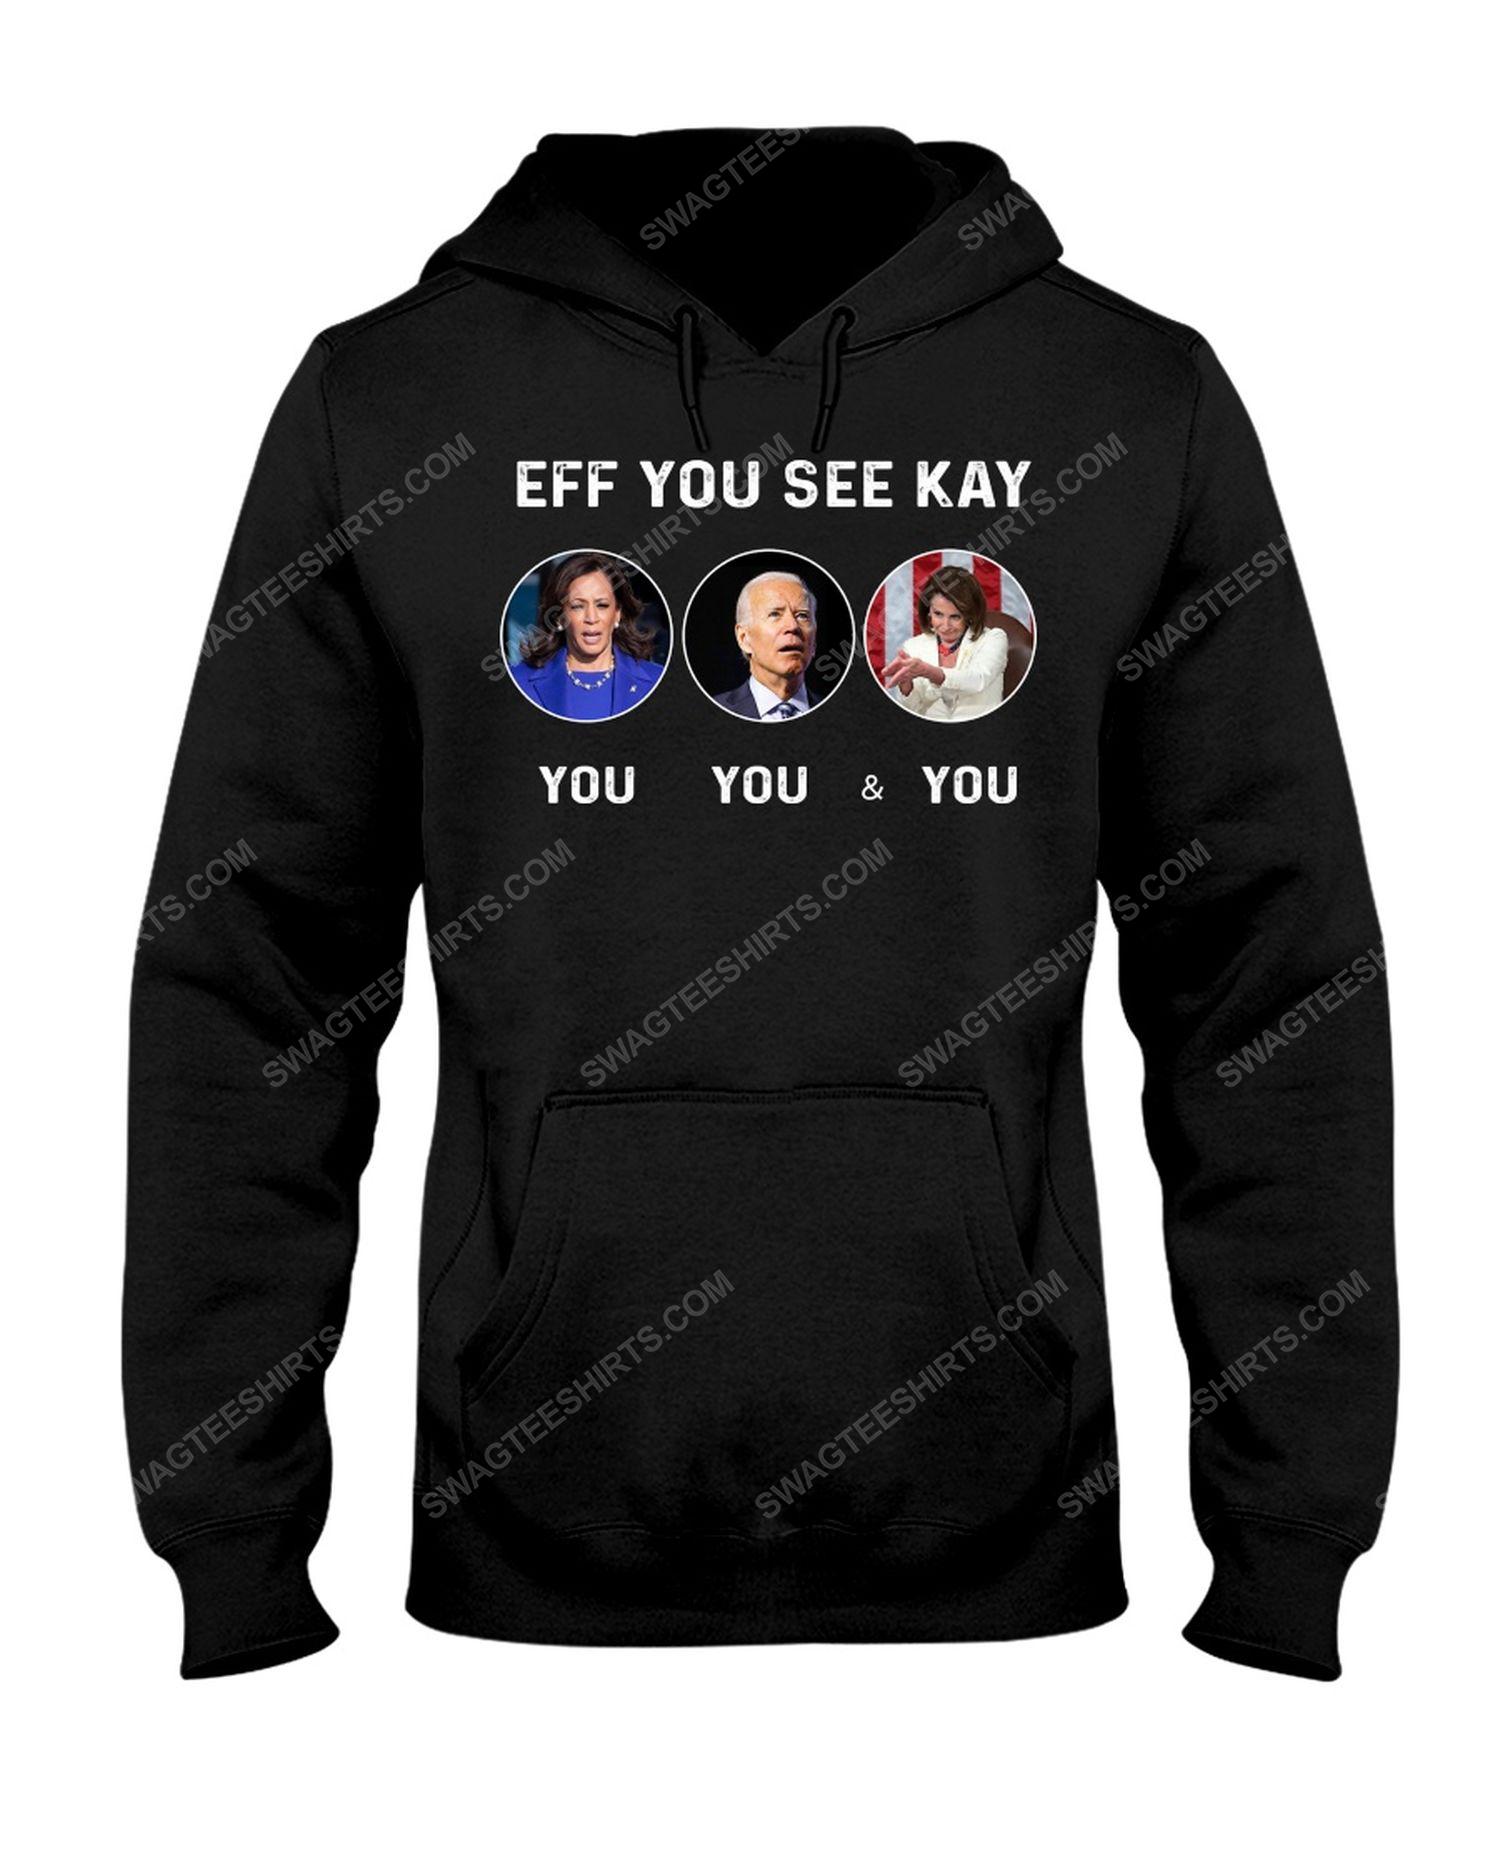 EFF you see kay political hoodie